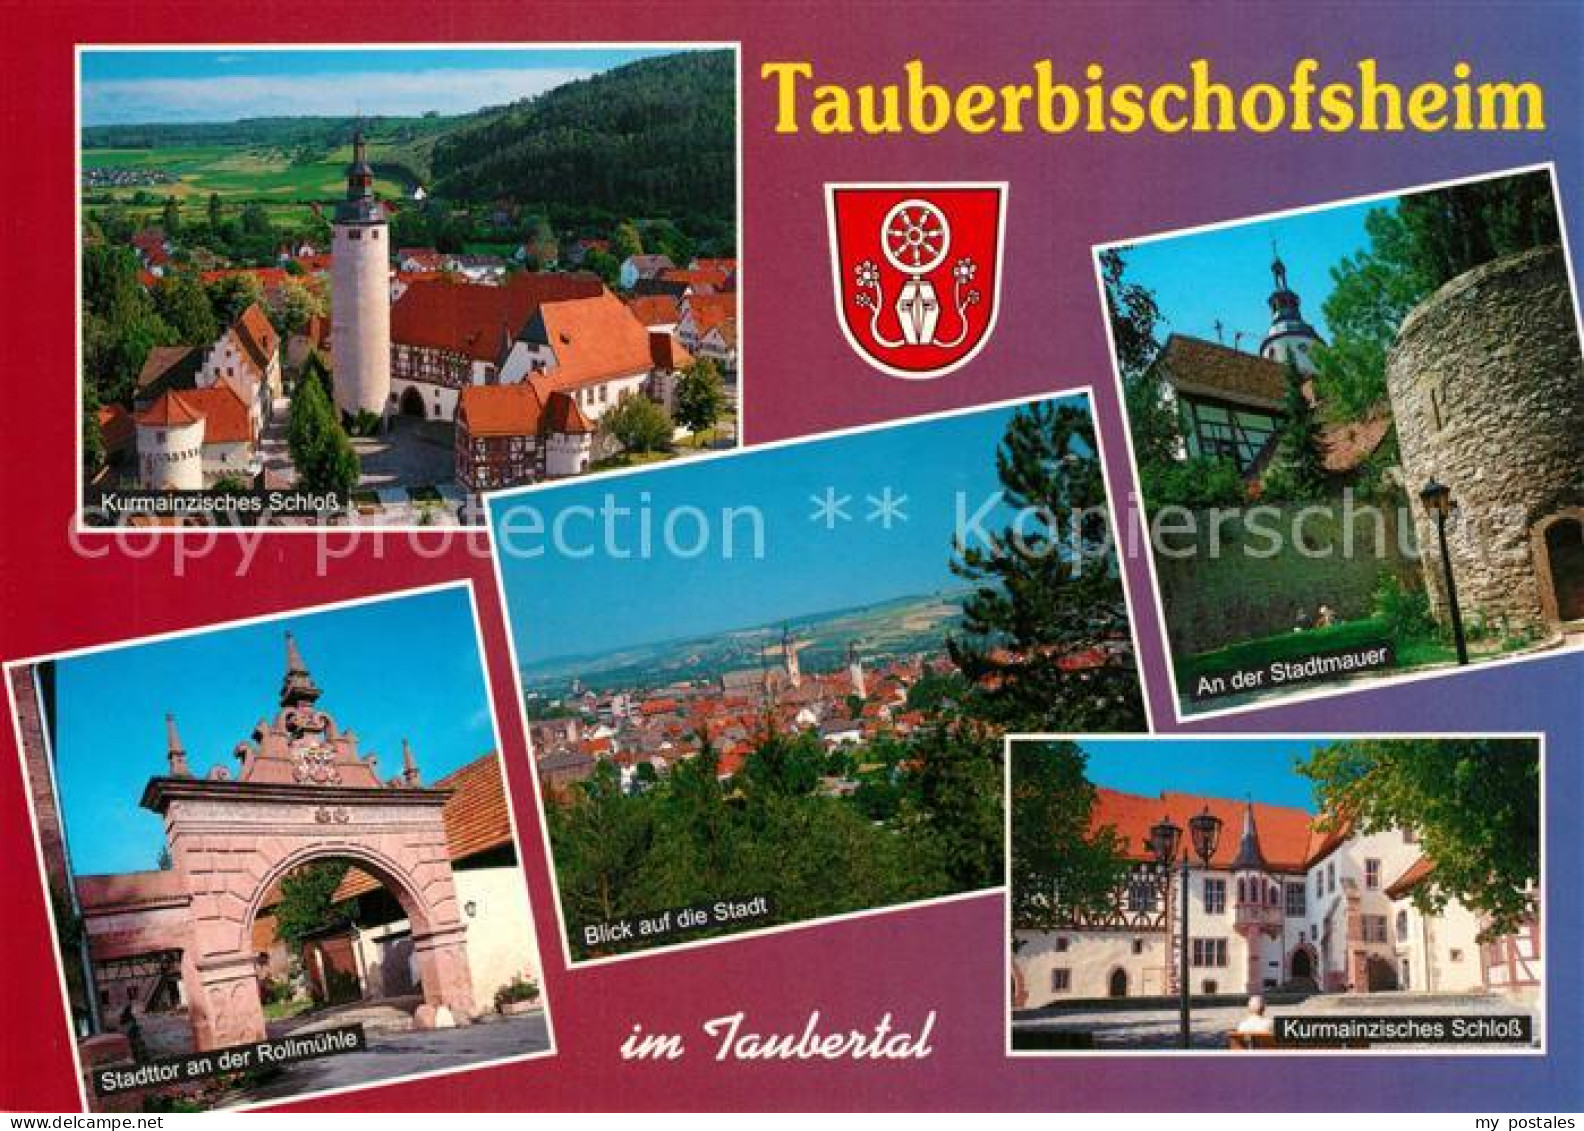 73226781 Tauberbischofsheim Kurmainzisches Schloss Stadttor An Rollmuehle  Taube - Tauberbischofsheim